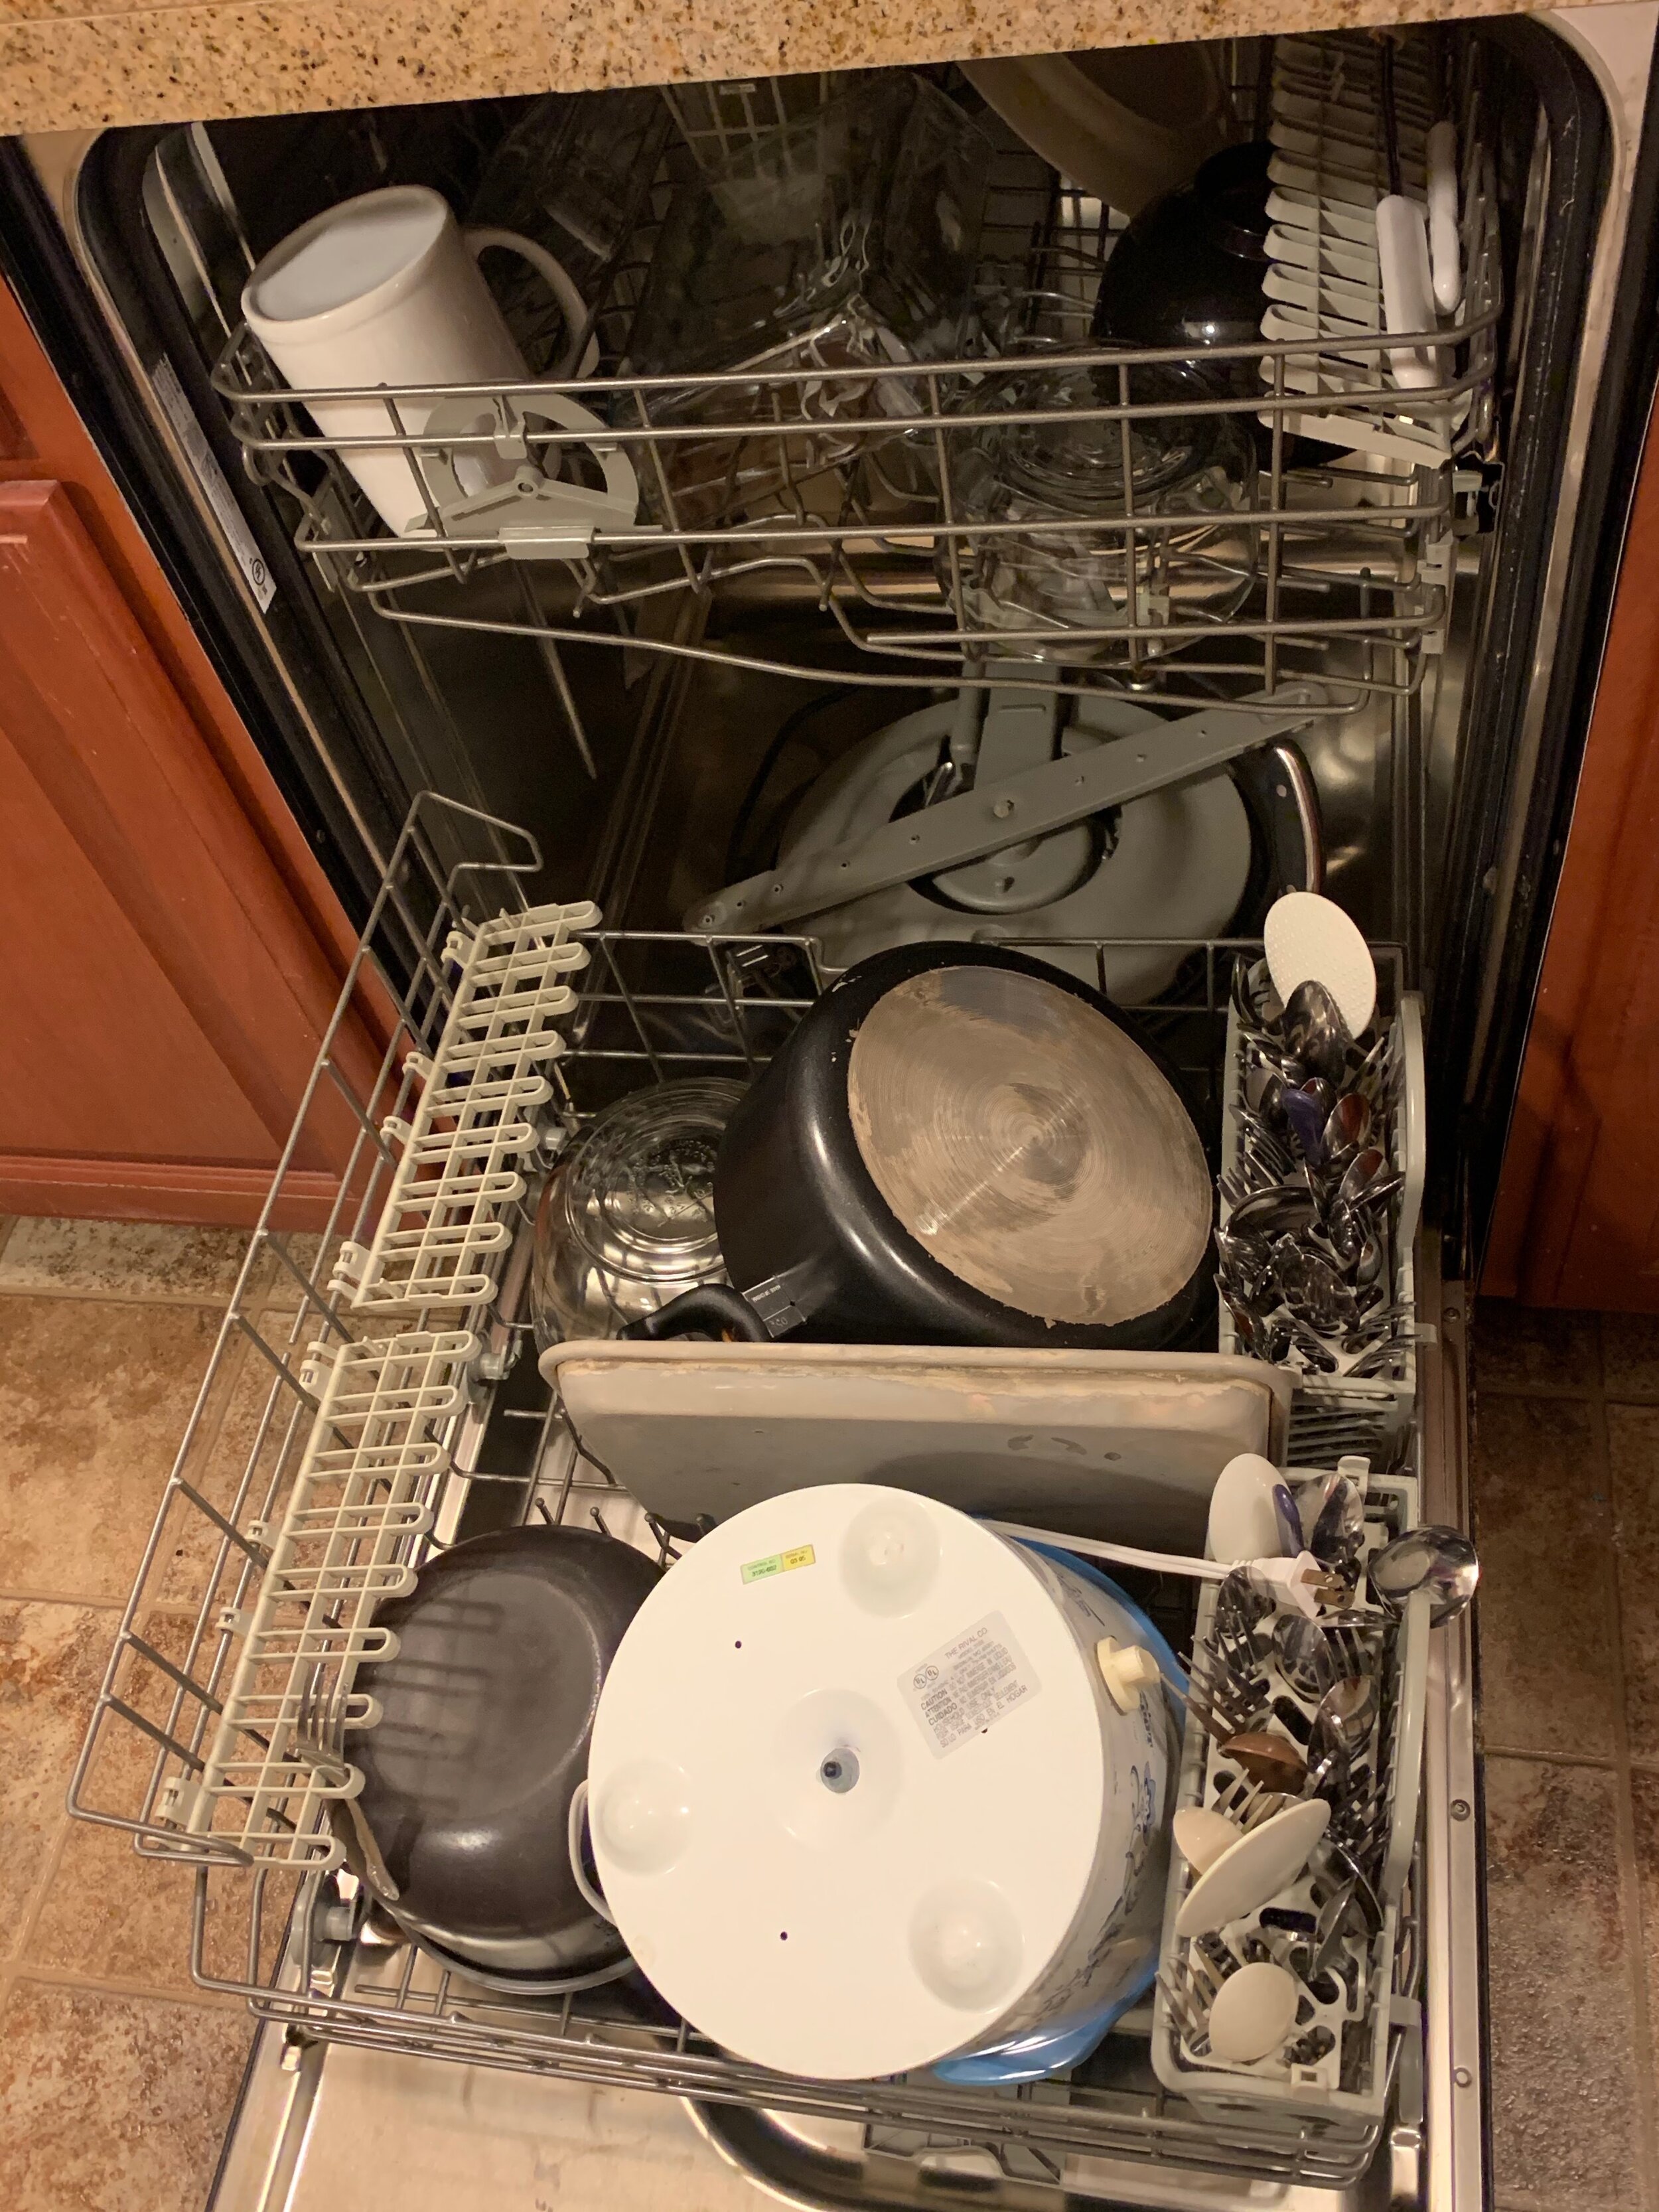 dishwasher.jpeg